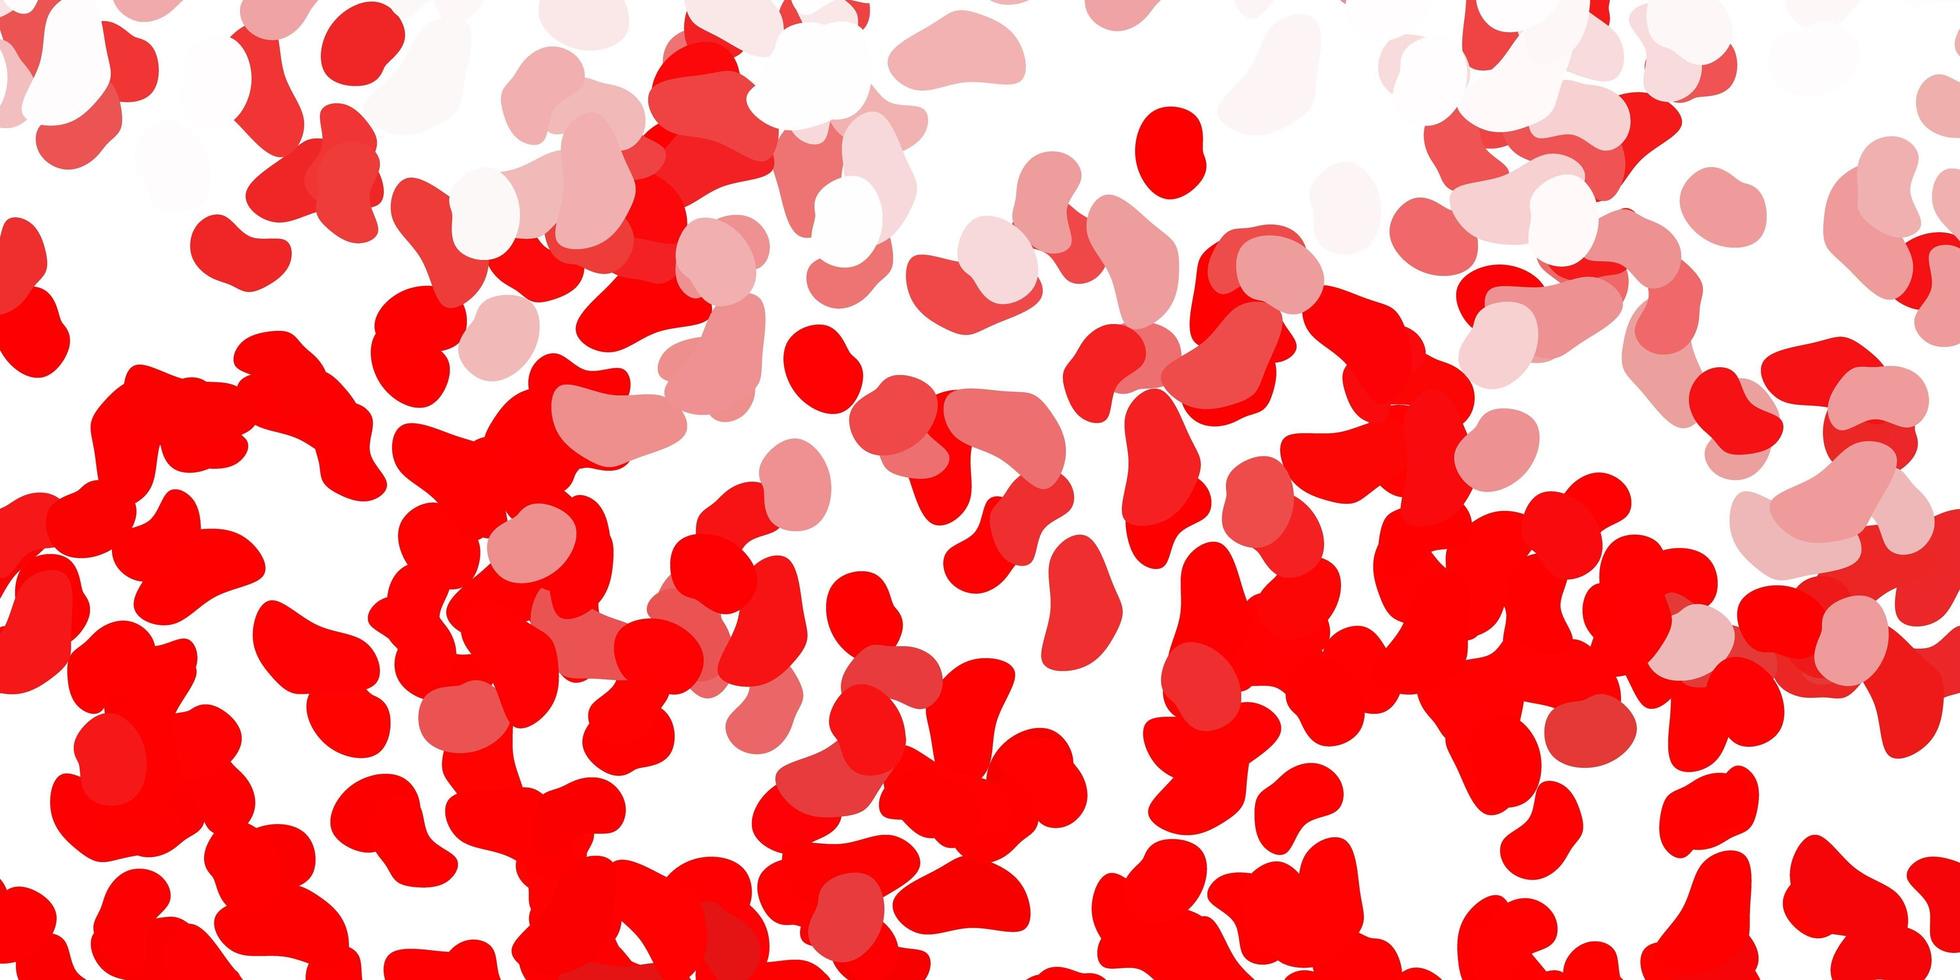 röd bakgrund med kaotiska former. vektor